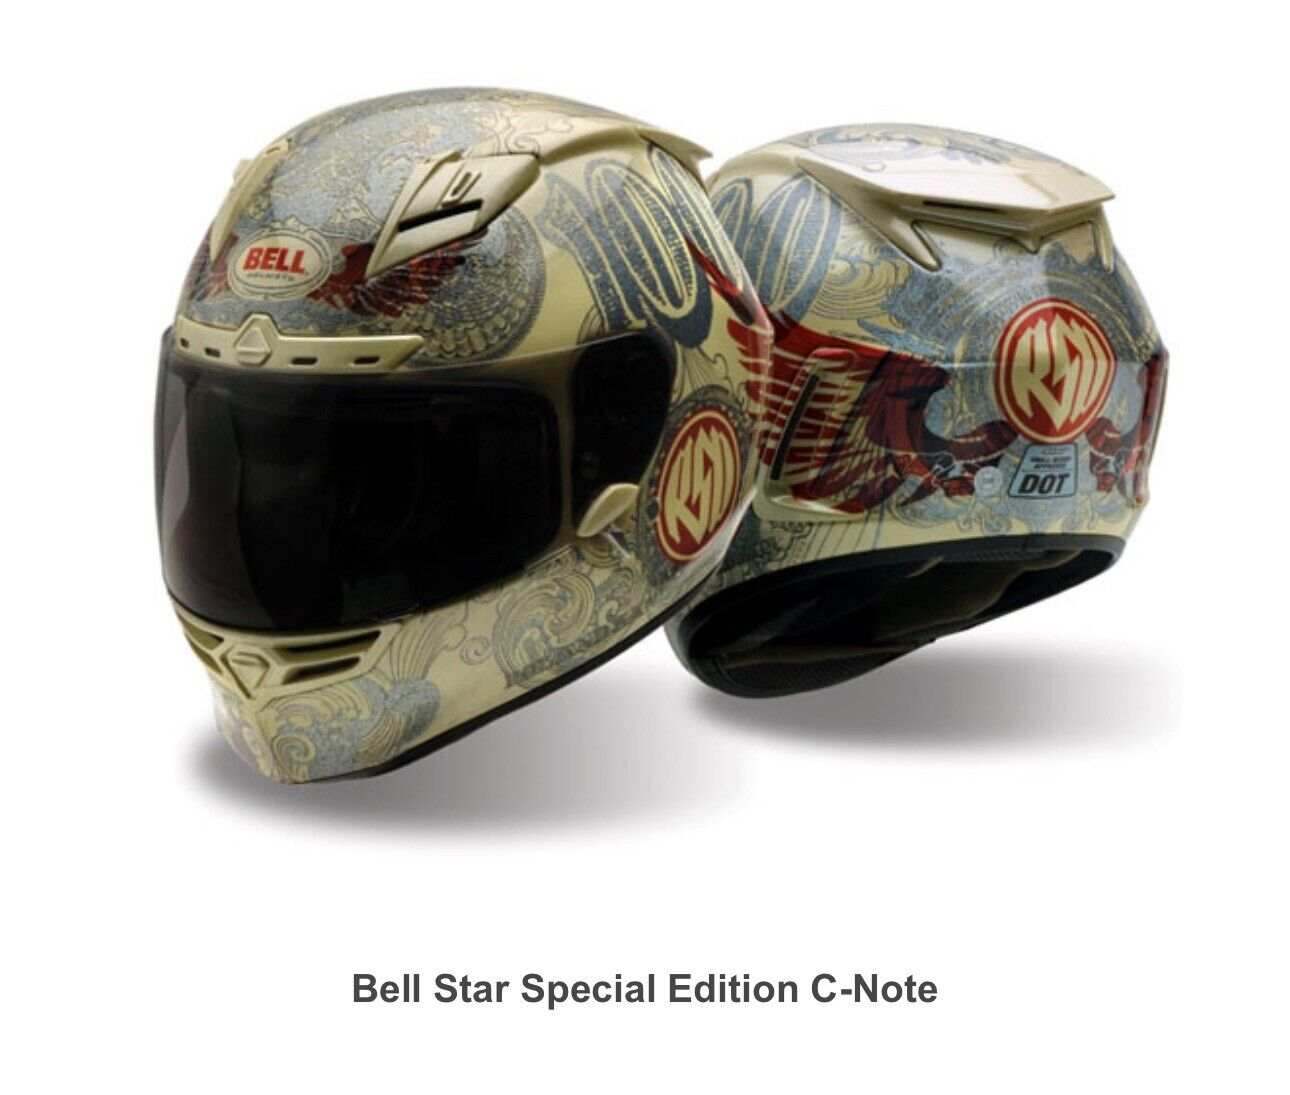 Bell Star RSD Roland Sands Design “C-Note” Helmet Size Large Harley Davidson